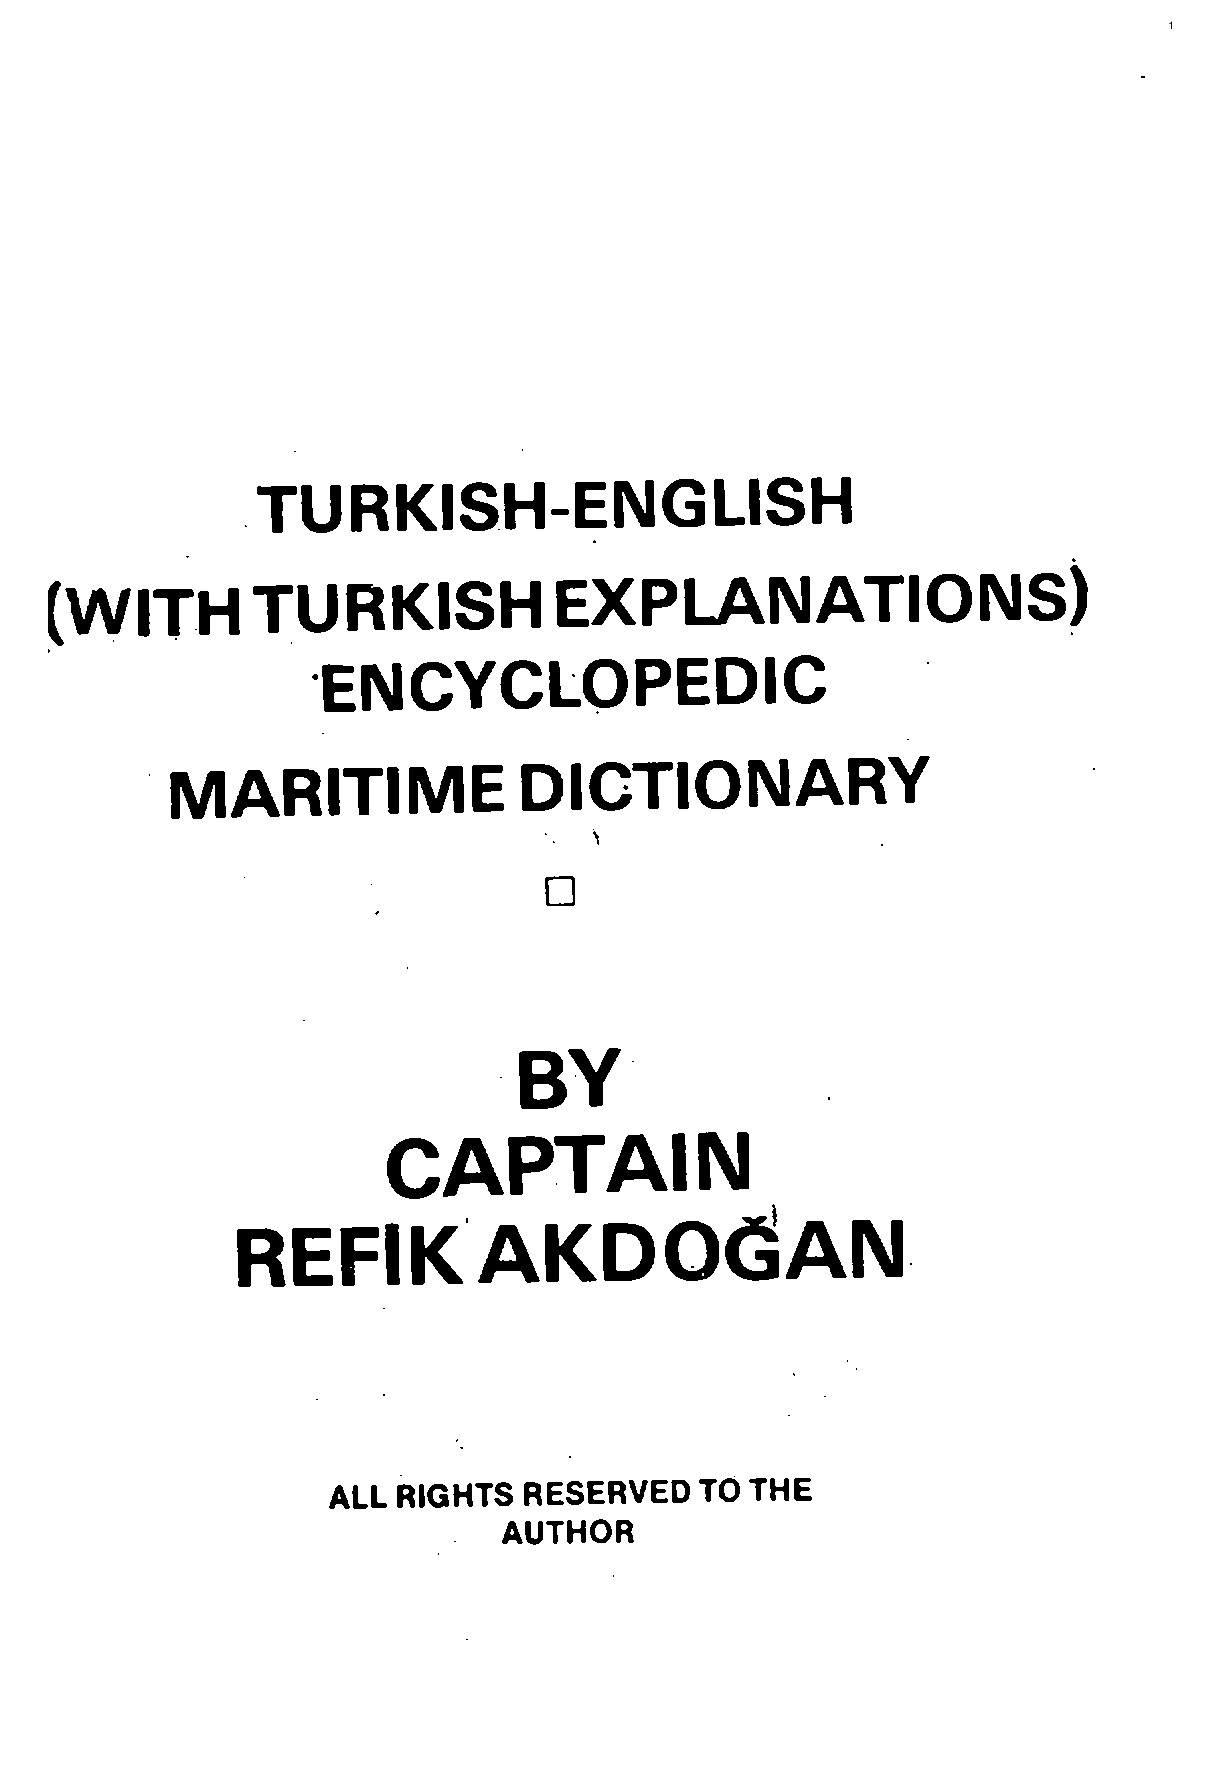 Türkce-Ingilizce Denizçilik Sözlüğü-Refiq Ağdoğan-1975-478s